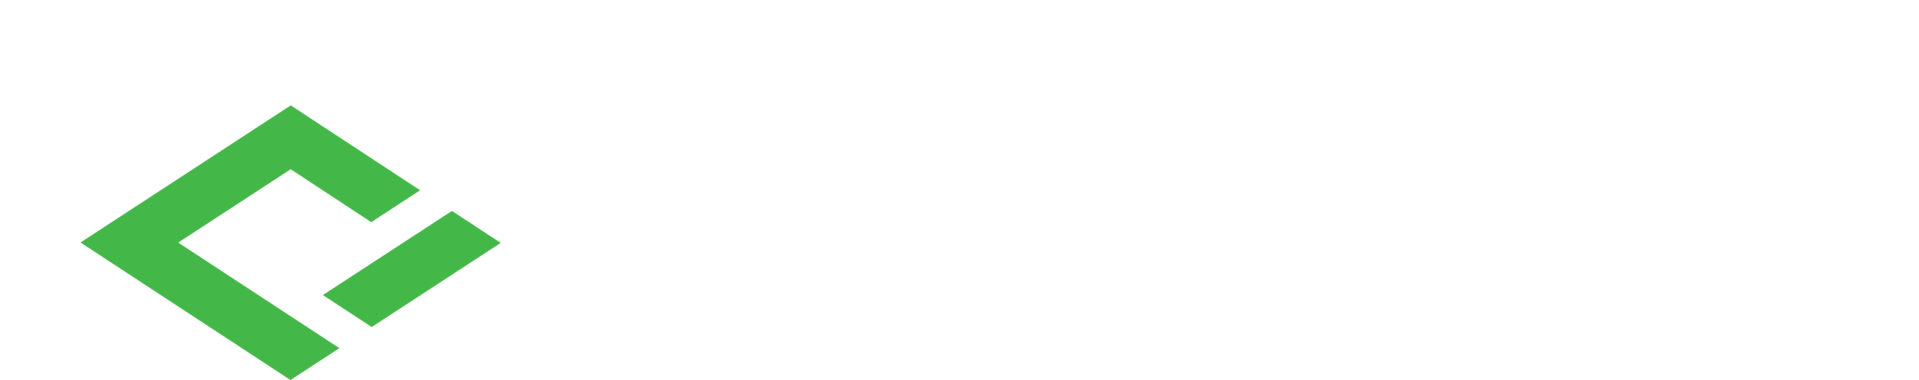 Filutowski eye